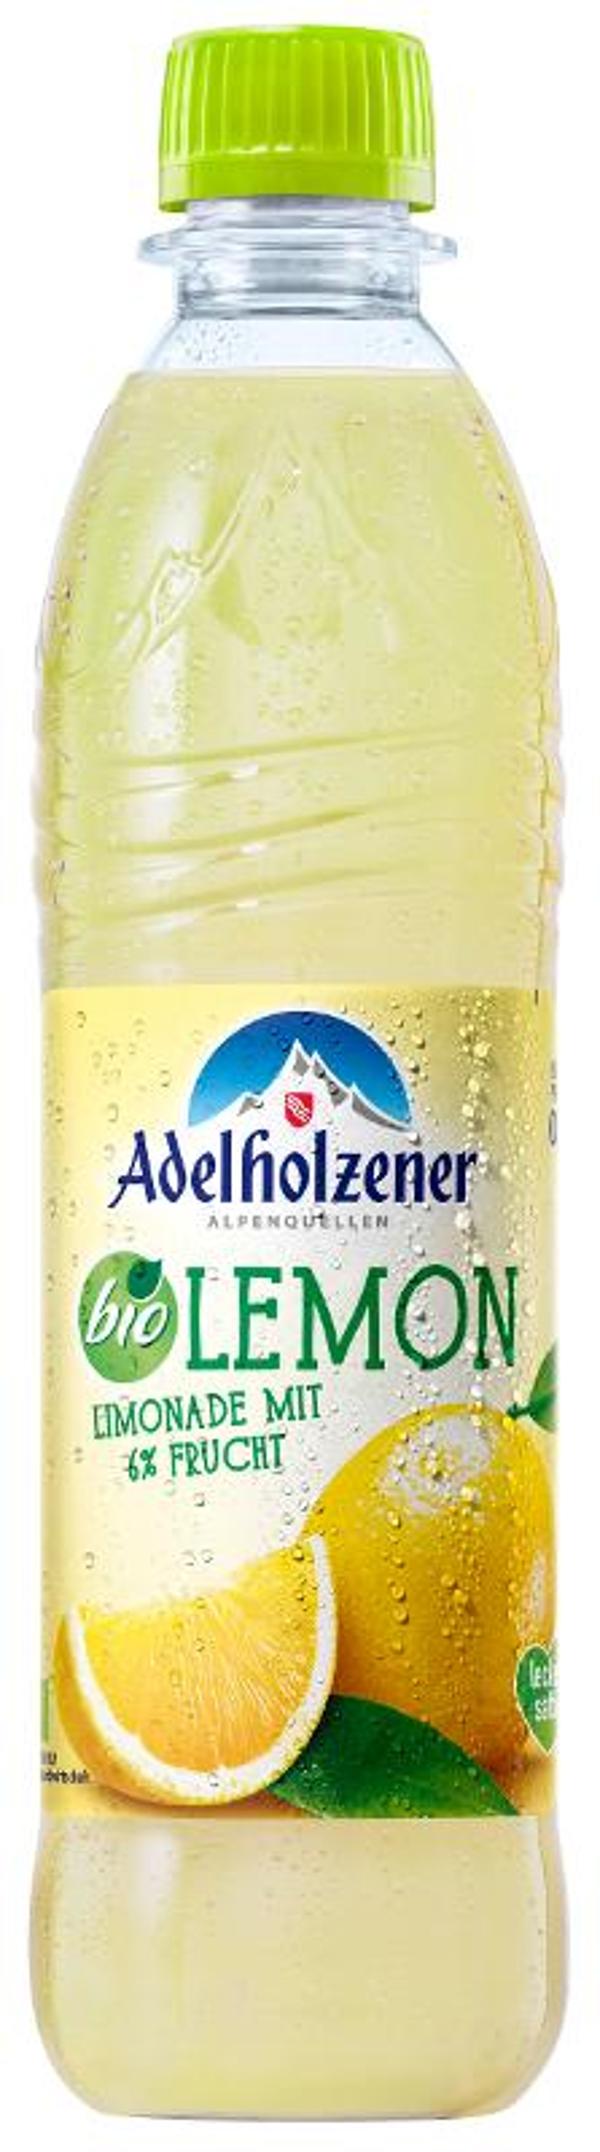 Produktfoto zu Adelholzener Lemon 12x0,5l